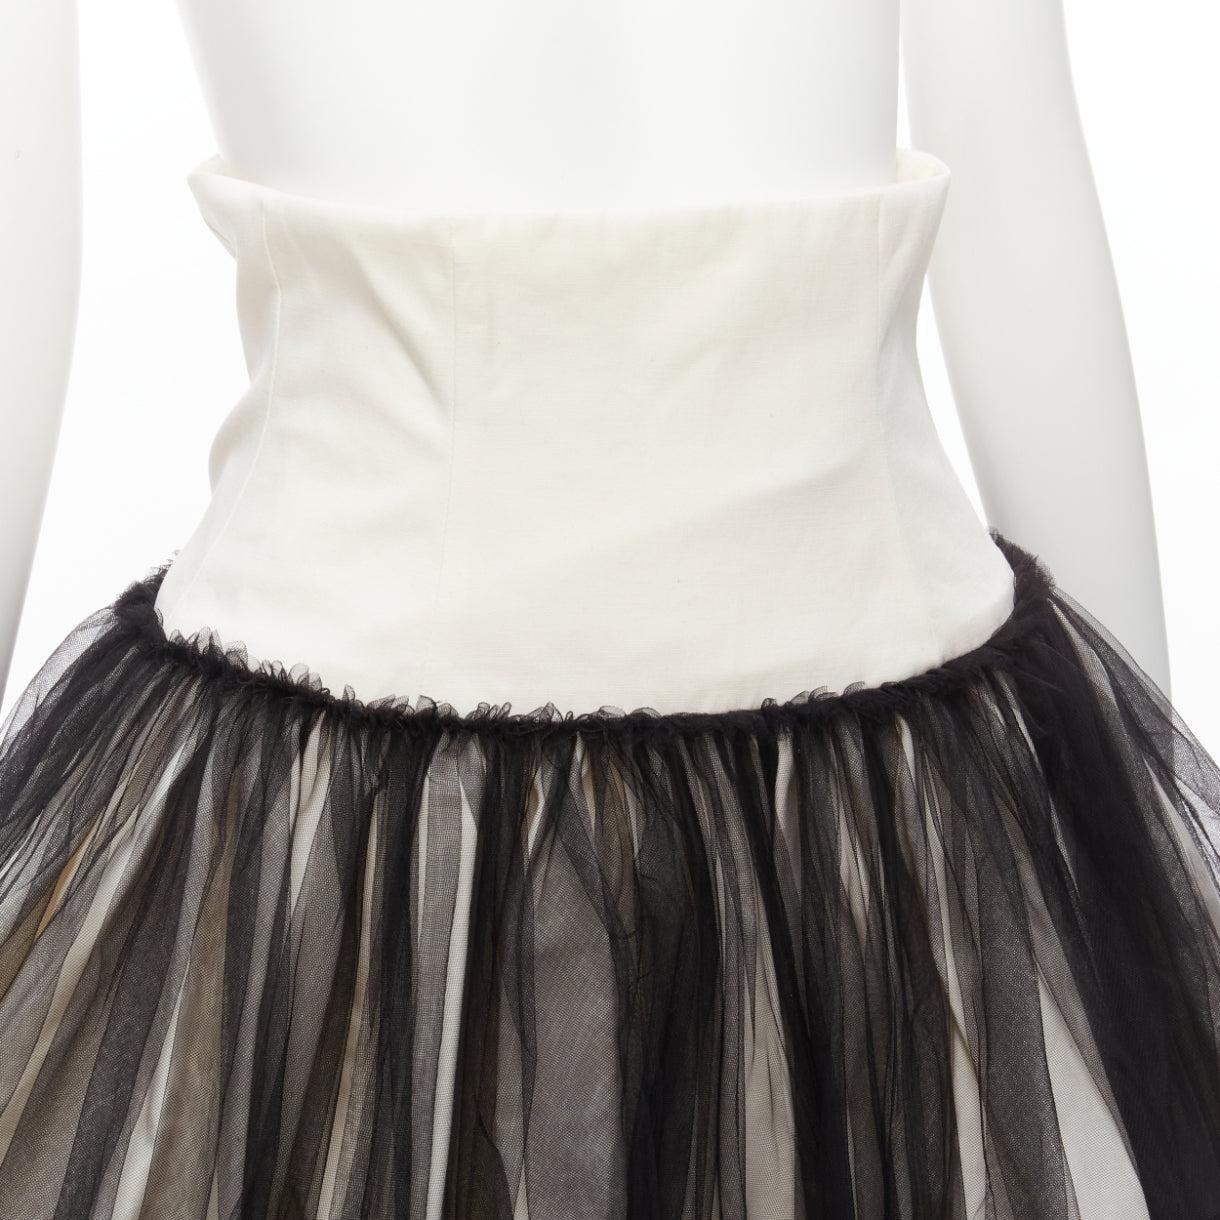 RENAISSANCE RENAISSANCE Qajar 2022 Le Pouf tulle overlay cotton puff skirt FR36 For Sale 3